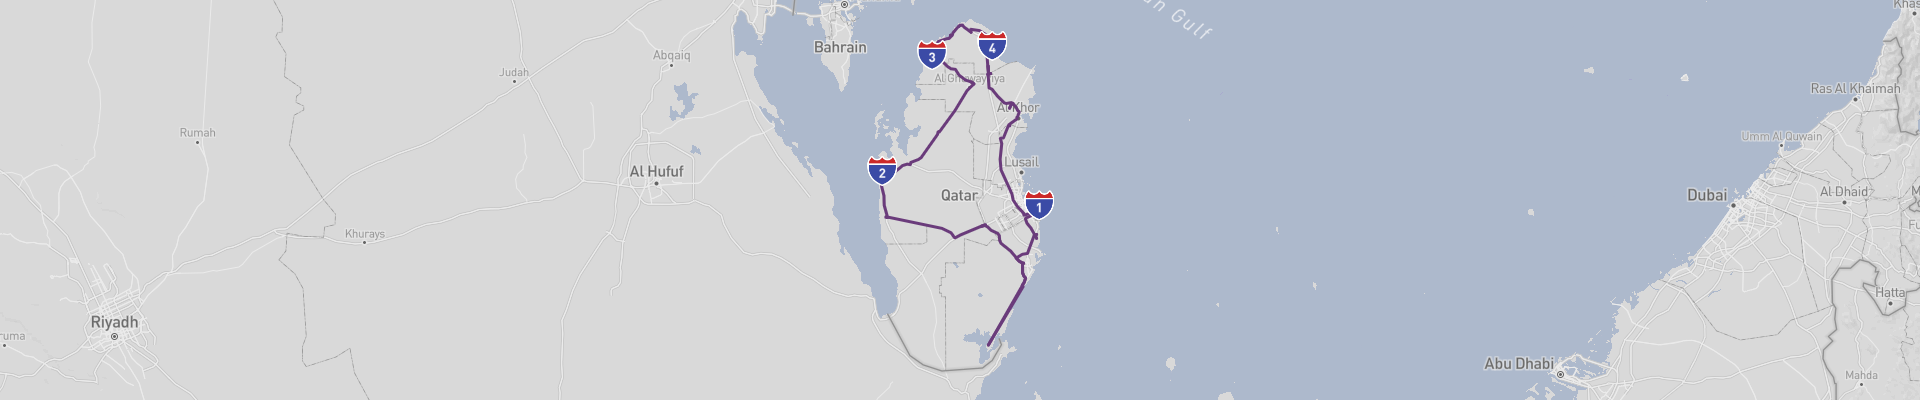 Itinéraire Qatar 